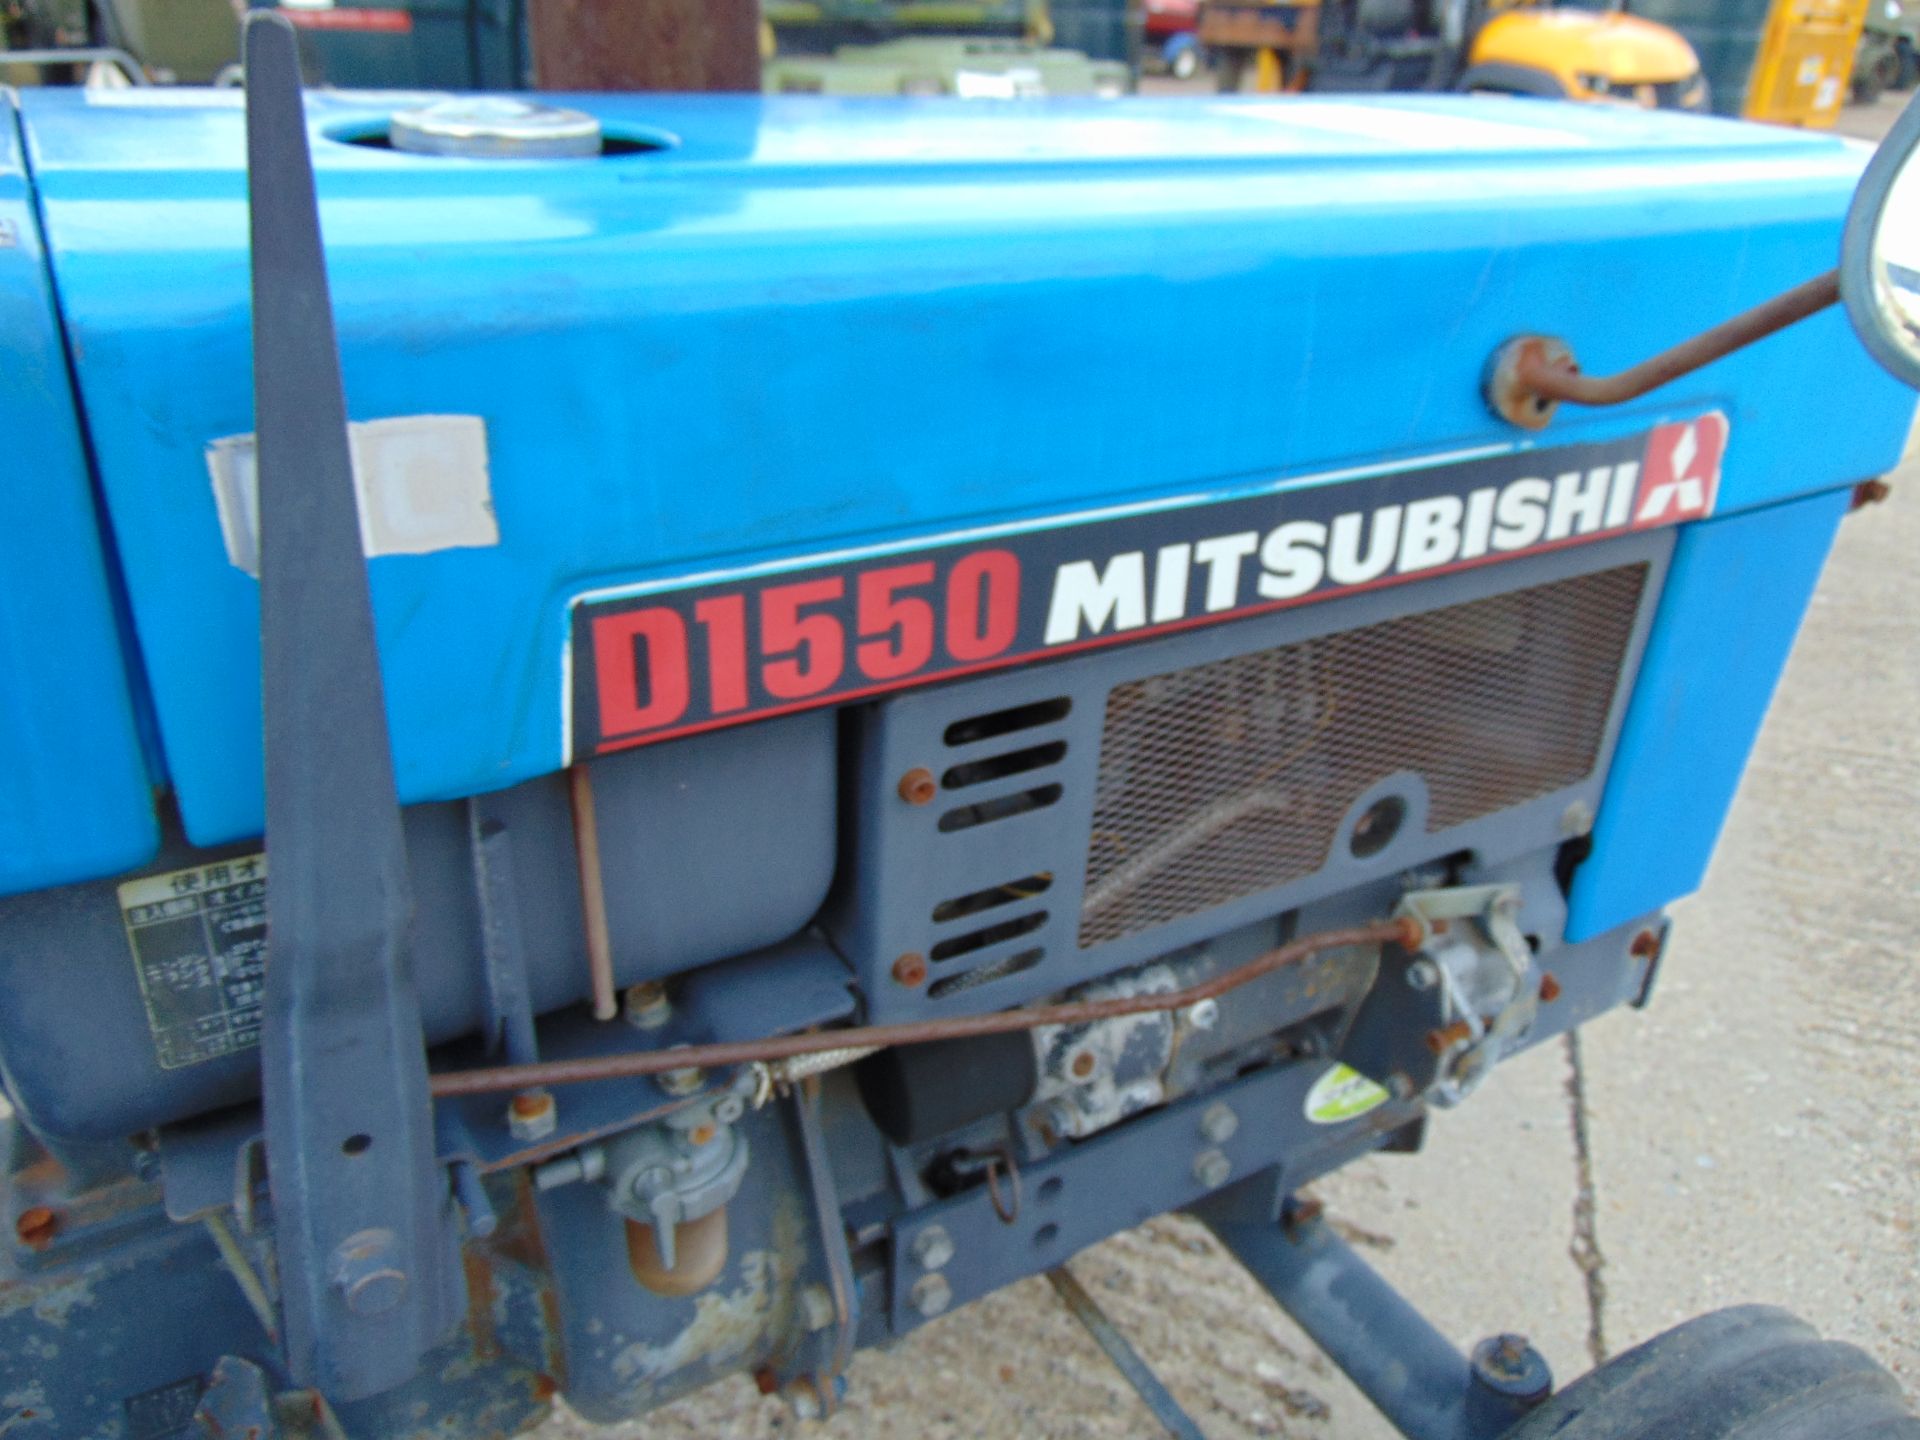 Mitsubishi D1550 Compact Tractor c/w Rotovator - Image 14 of 15